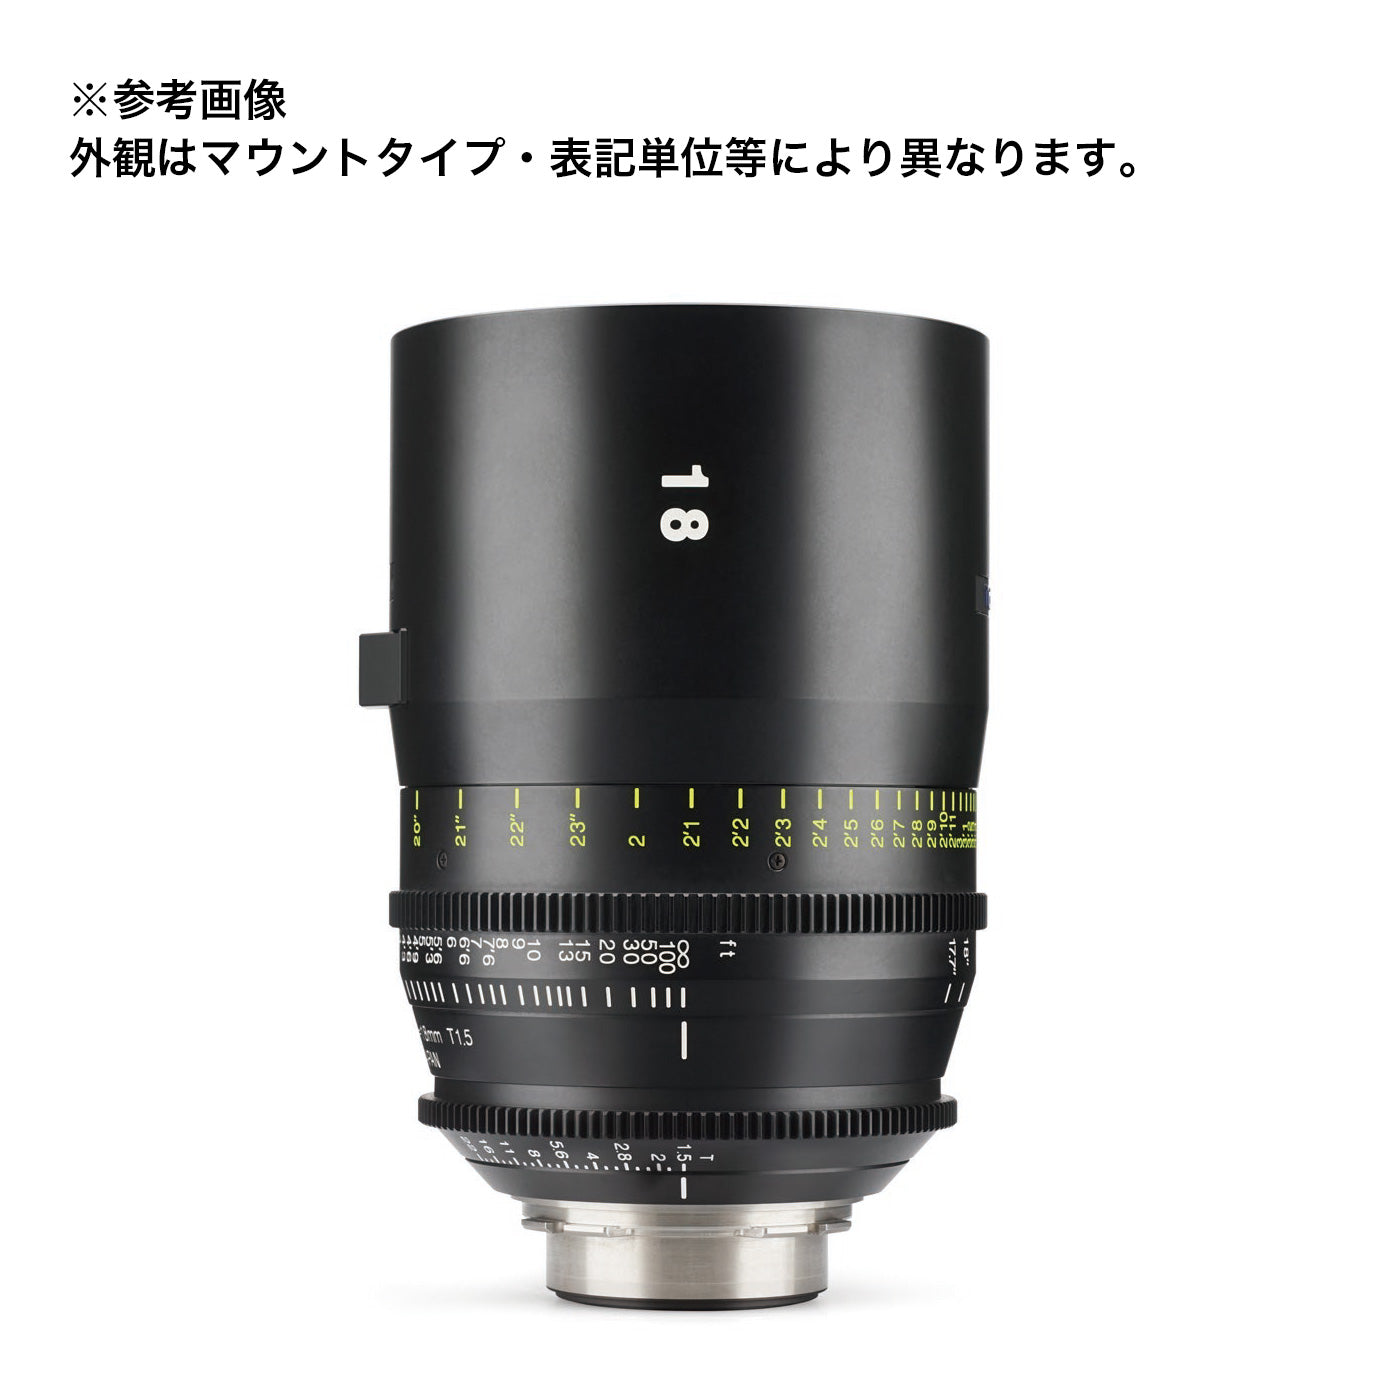 Tokina(トキナー) シネマプライムレンズ VISTA 18mm T1.5 CINEMA LENS Eマウント フィート表記 [264148]